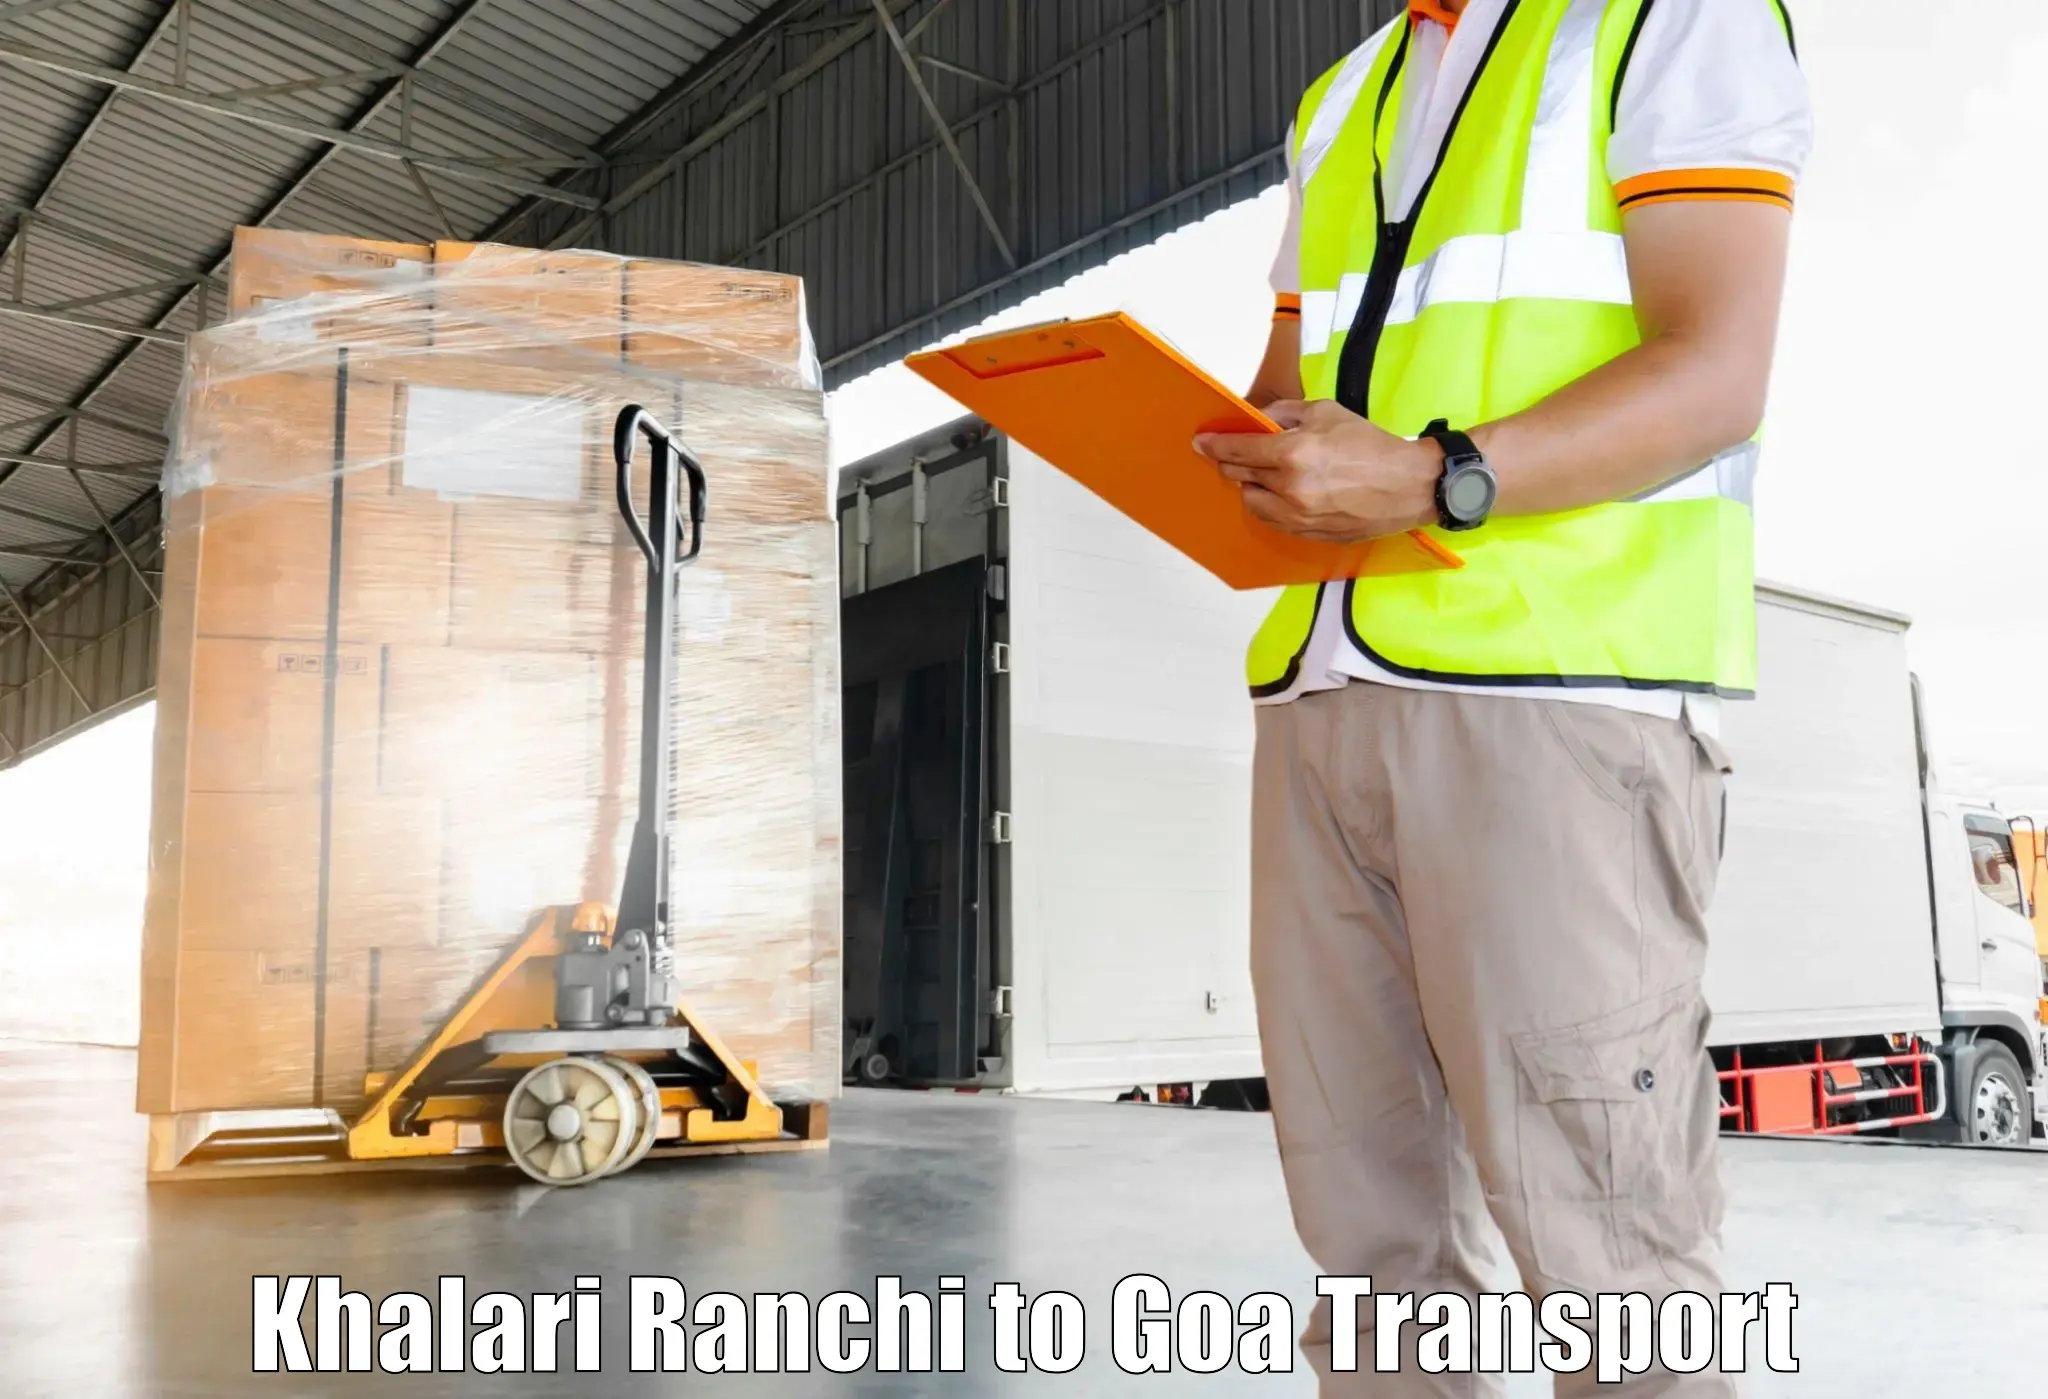 Lorry transport service Khalari Ranchi to Canacona